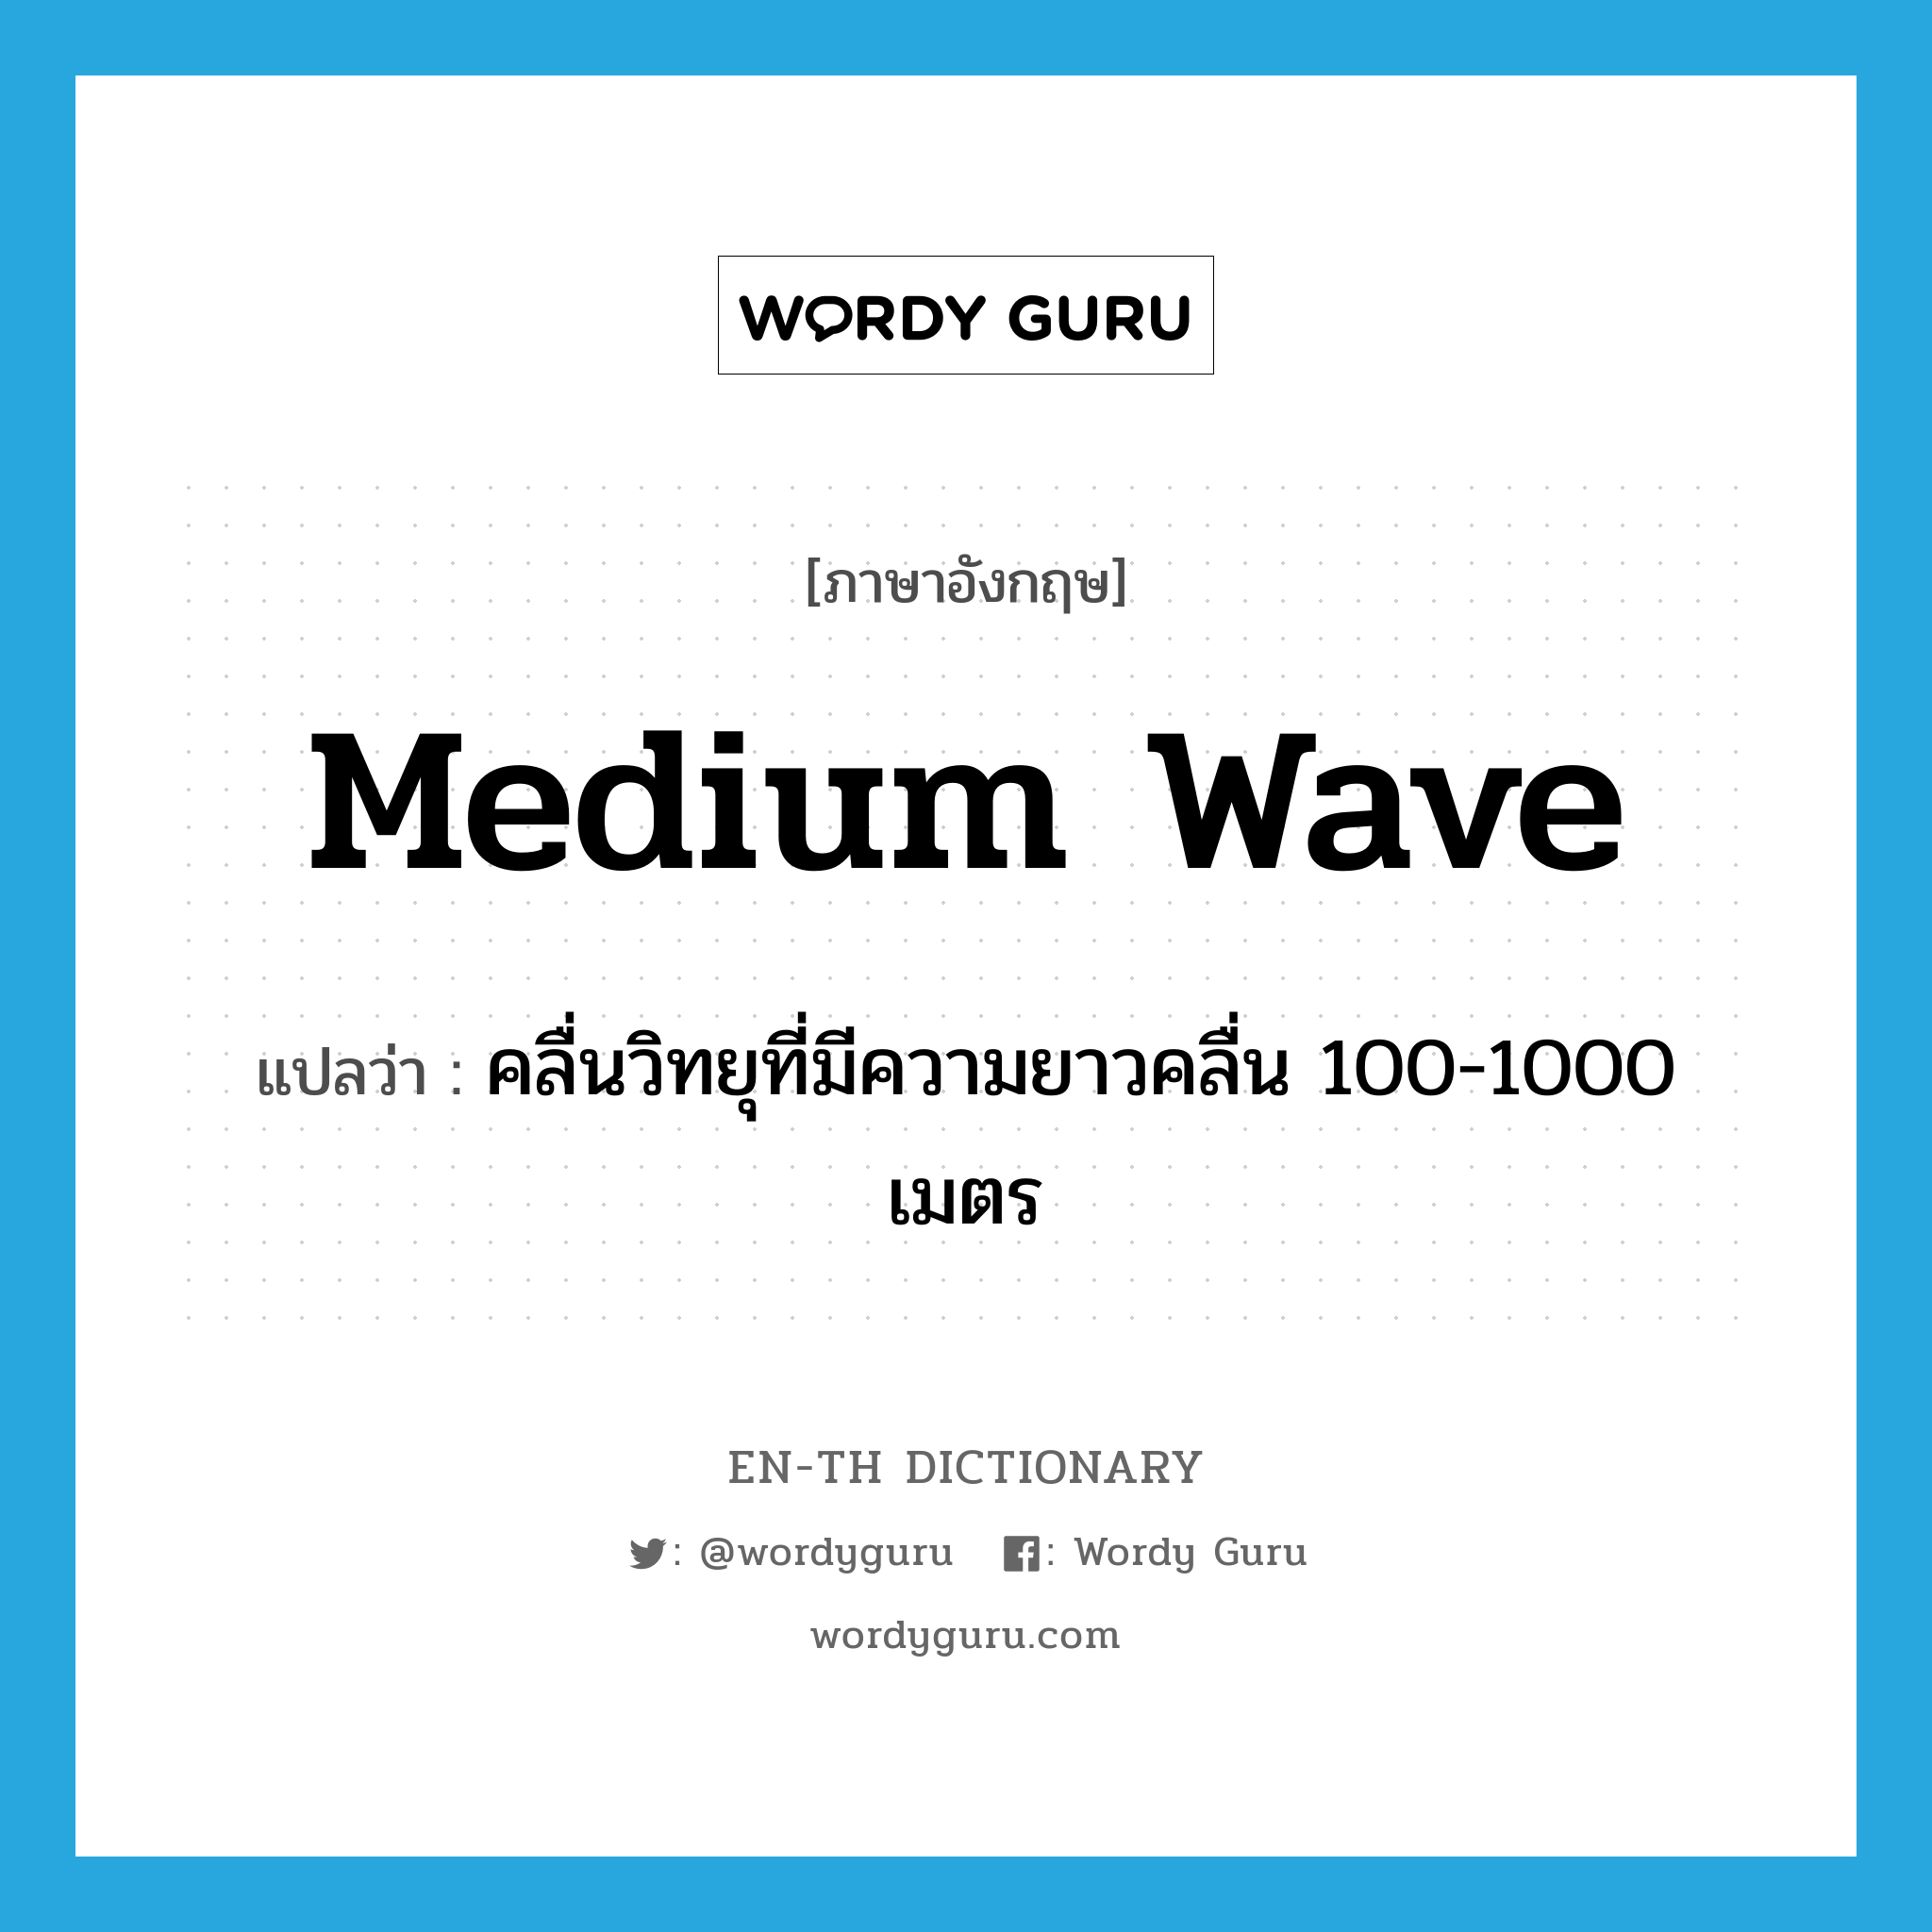 medium wave แปลว่า?, คำศัพท์ภาษาอังกฤษ medium wave แปลว่า คลื่นวิทยุที่มีความยาวคลื่น 100-1000 เมตร ประเภท N หมวด N